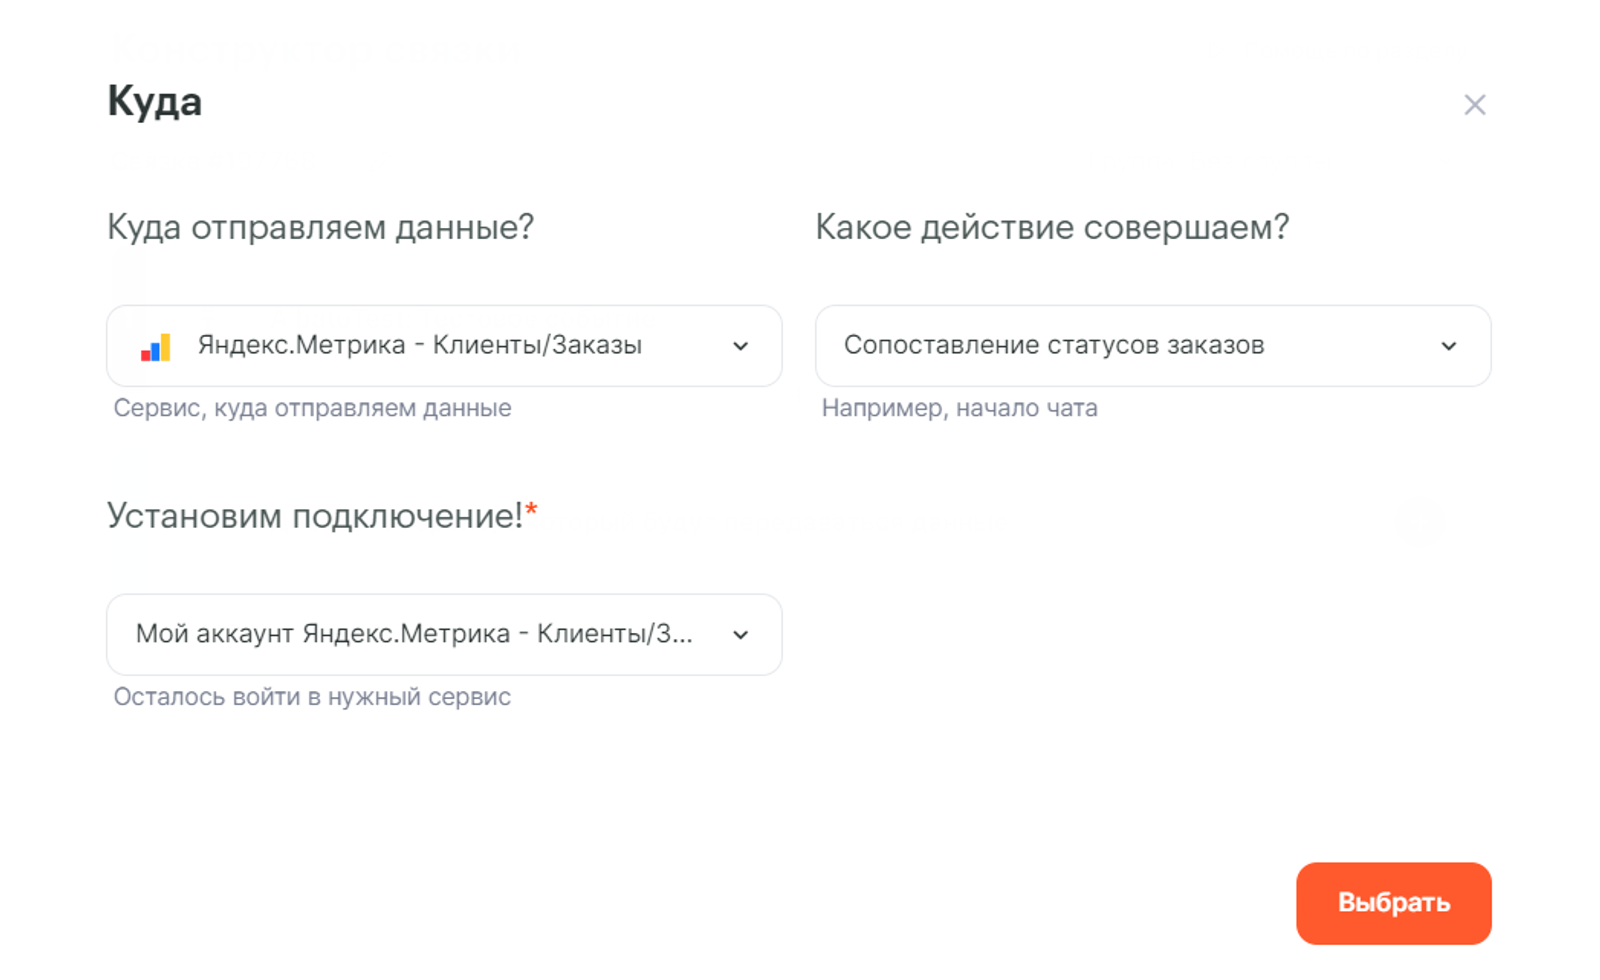 Какой id счетчика mail ru принадлежит сайту